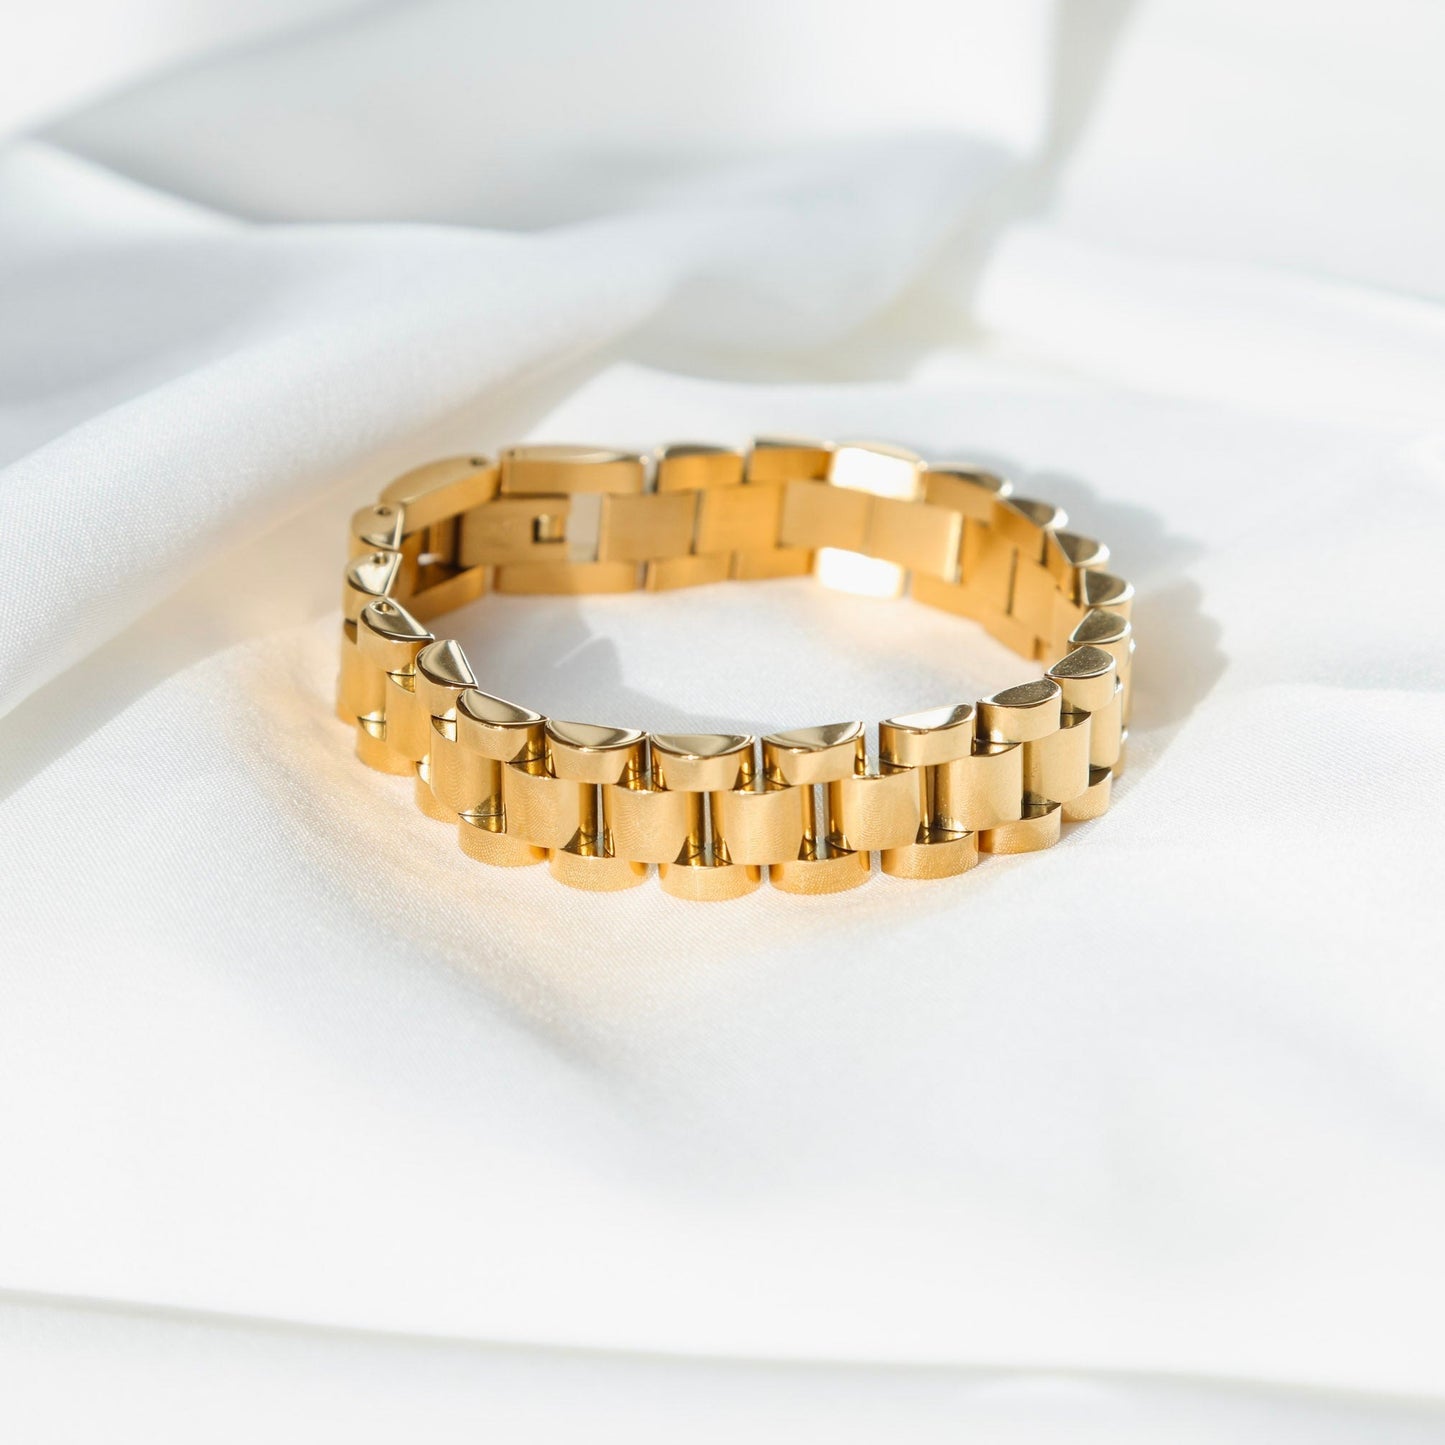 On My Time Watch Strap Bracelet - Gold